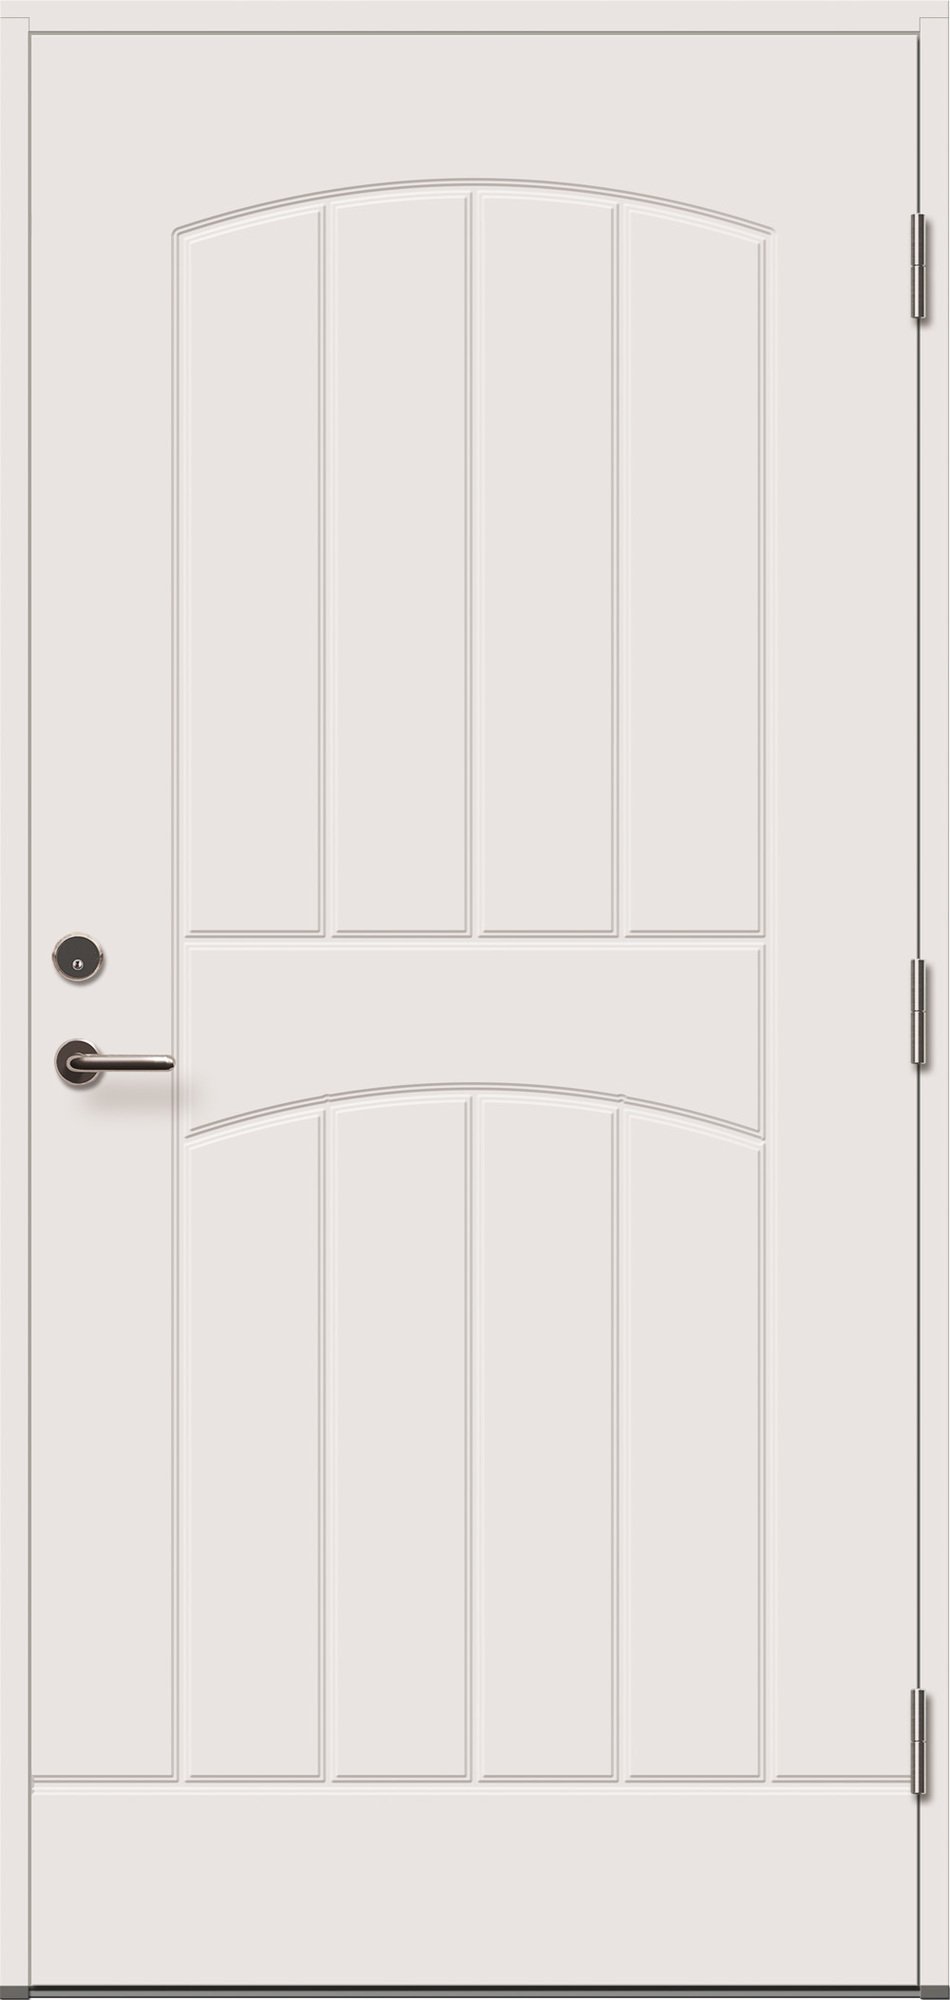 Lauko durys VILJANDI GRACIA, baltos sp., 990 x 2088 mm, kairė